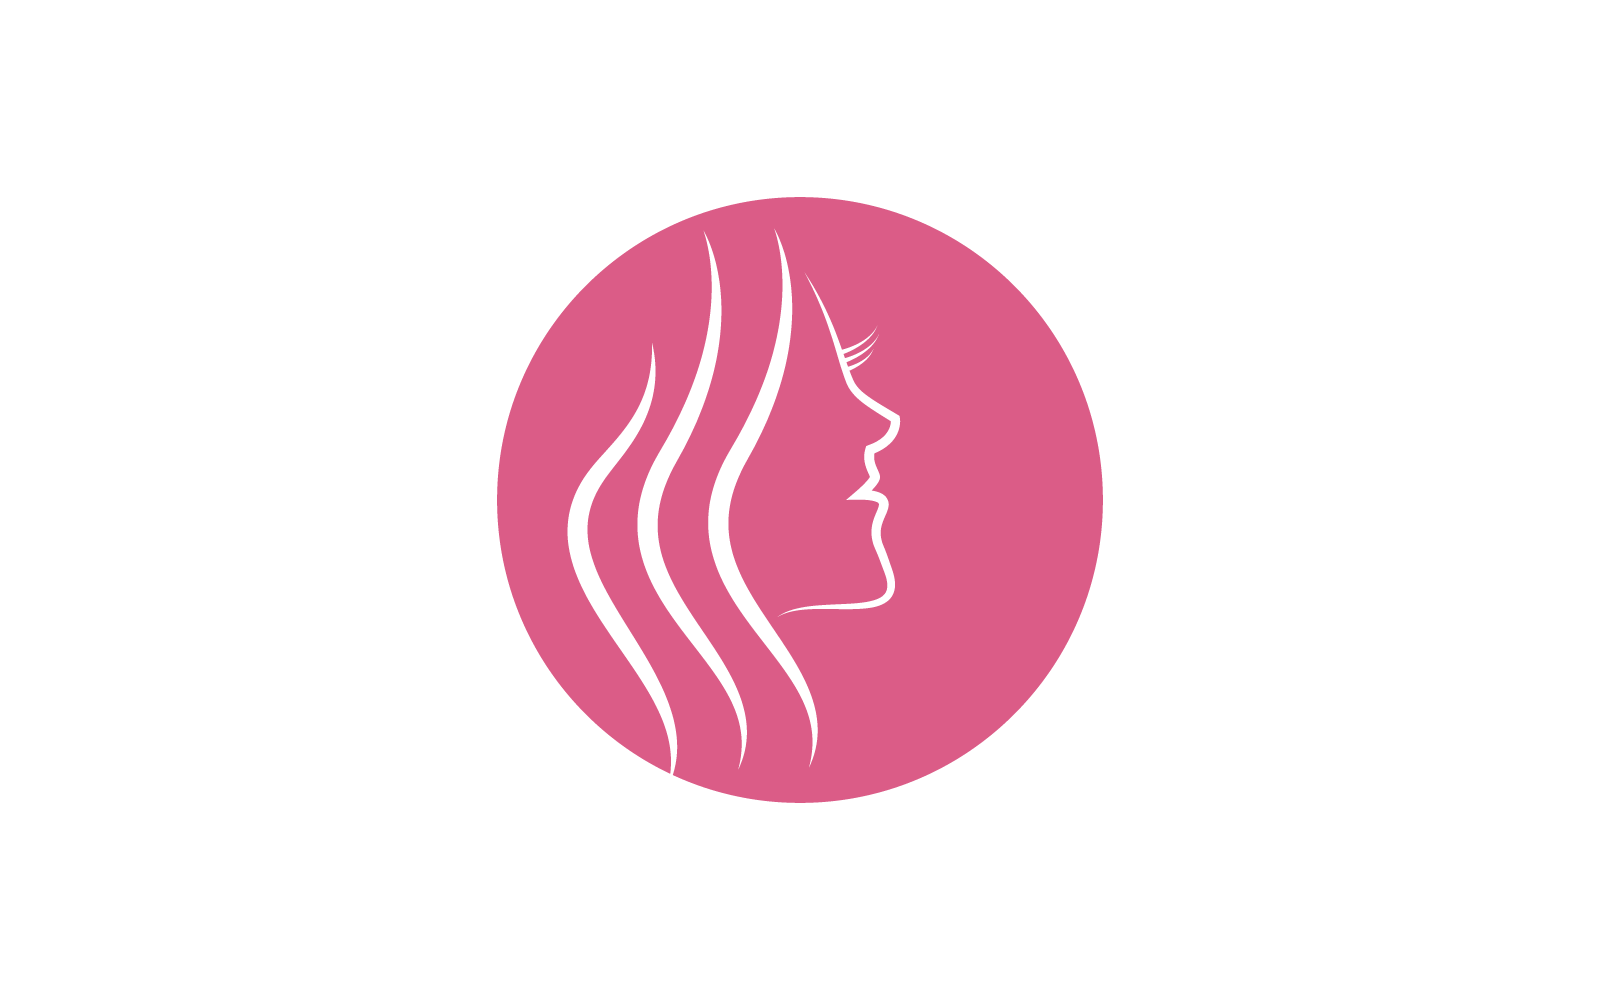 Beauty Woman face logo vector template design